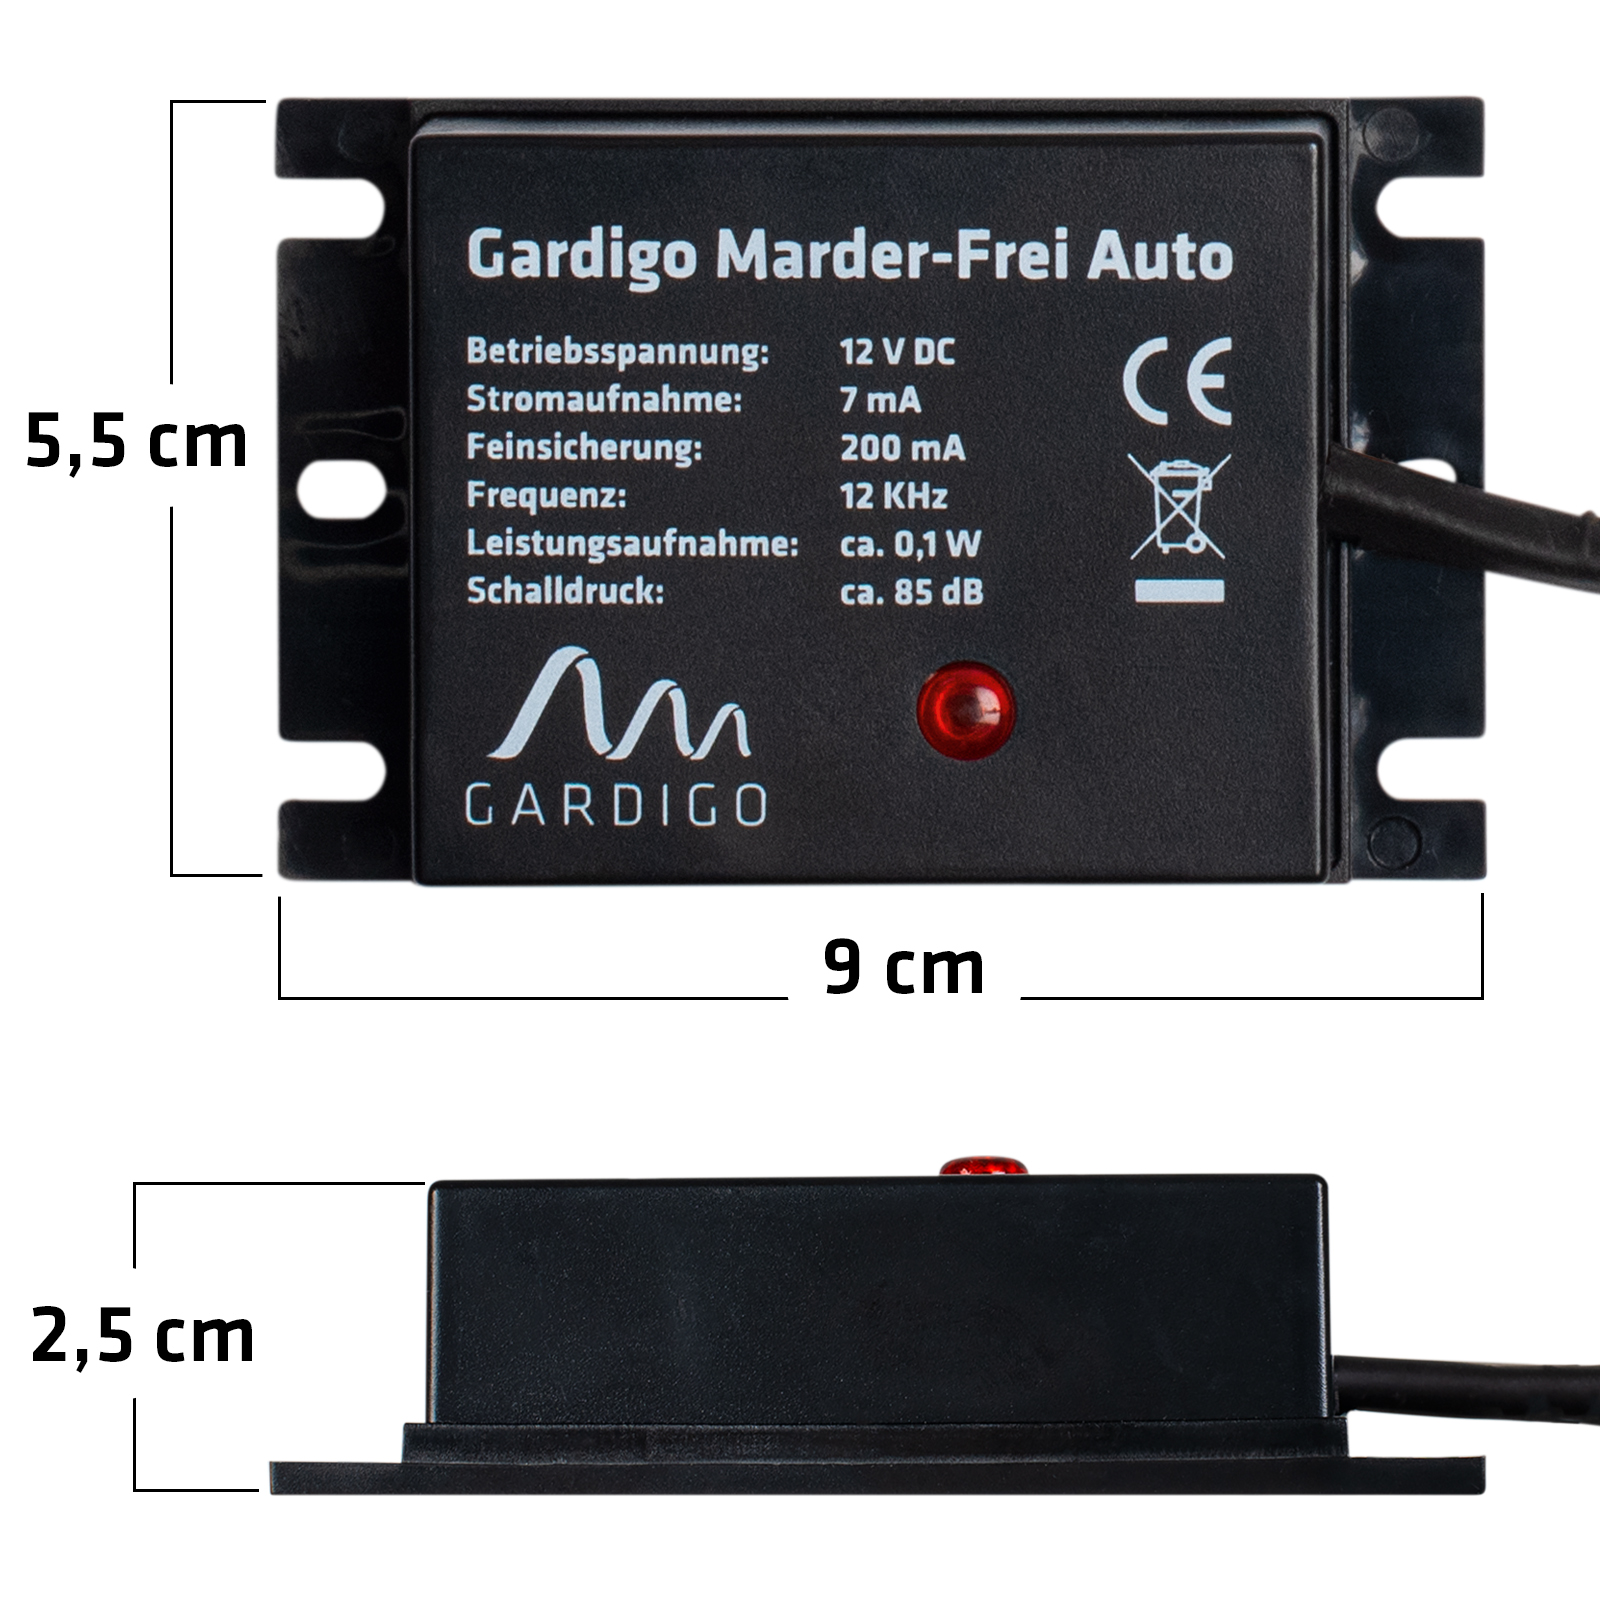 GARDIGO® Marderschreck - Marder-Frei Dual mit Batterien | Mobile  Marderabwehr für KFZ, Haus, Dachboden, Garage | Schall und Blitzlicht |  Anschluss an